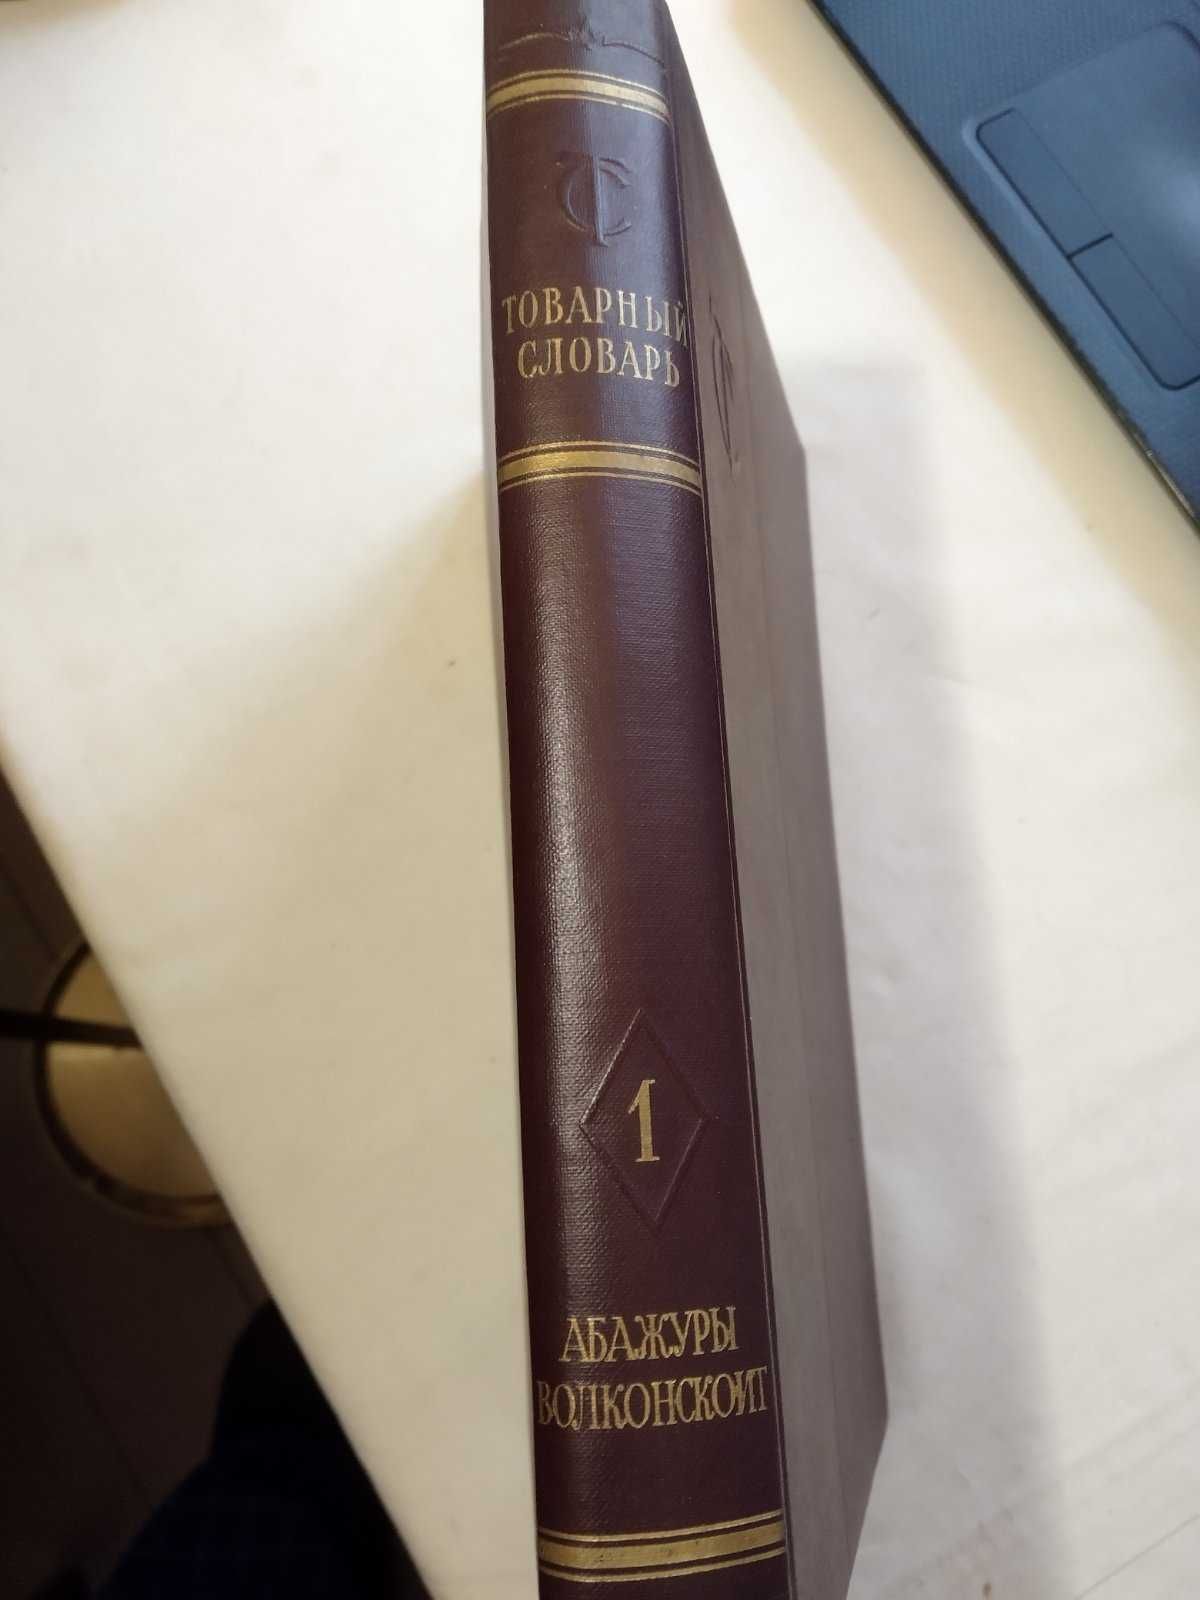 Товарний словник. 9 томів. Видання з 1956 по 1961роки.